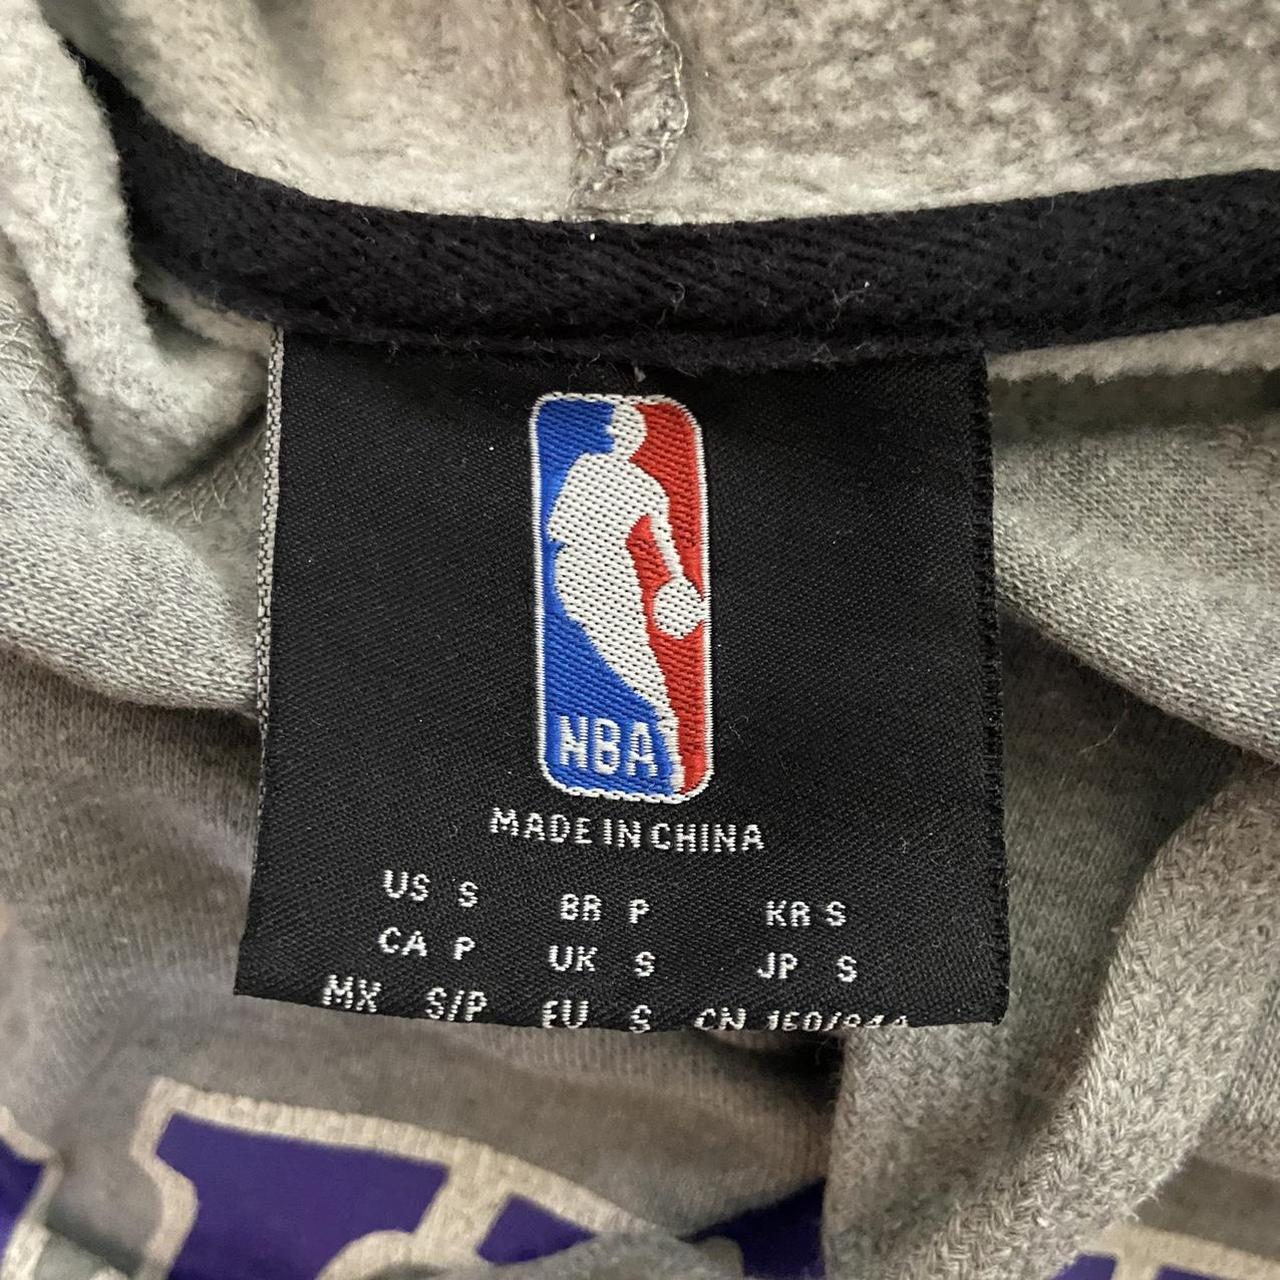 NBA Men's Grey and Purple Hoodie (4)